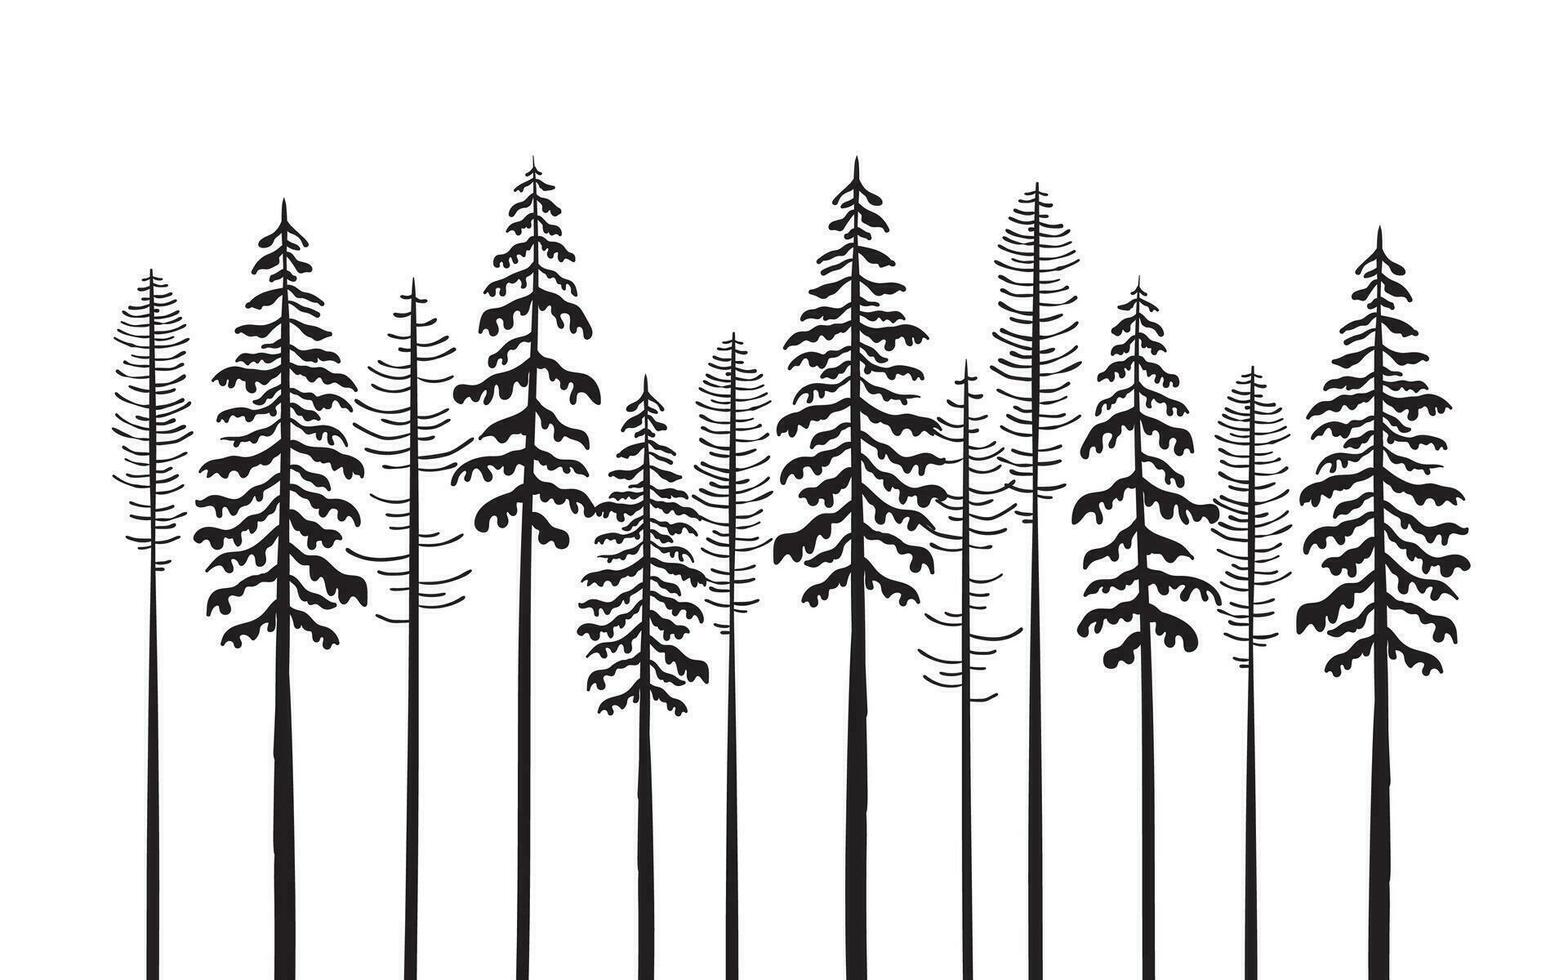 Baum Silhouetten. Design Elemente. Bilder von Tannen und Kiefern. Vektor skalierbar Grafik